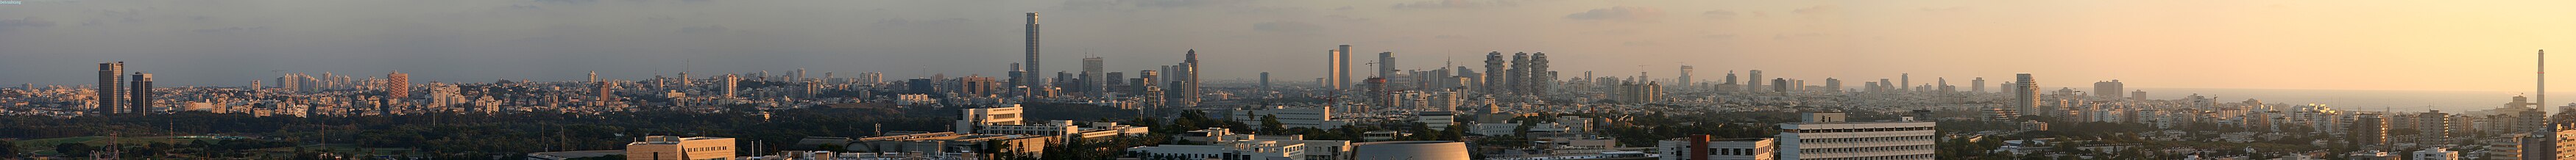 תל אביב ורמת-גן במבט מגבעת האוניברסיטה